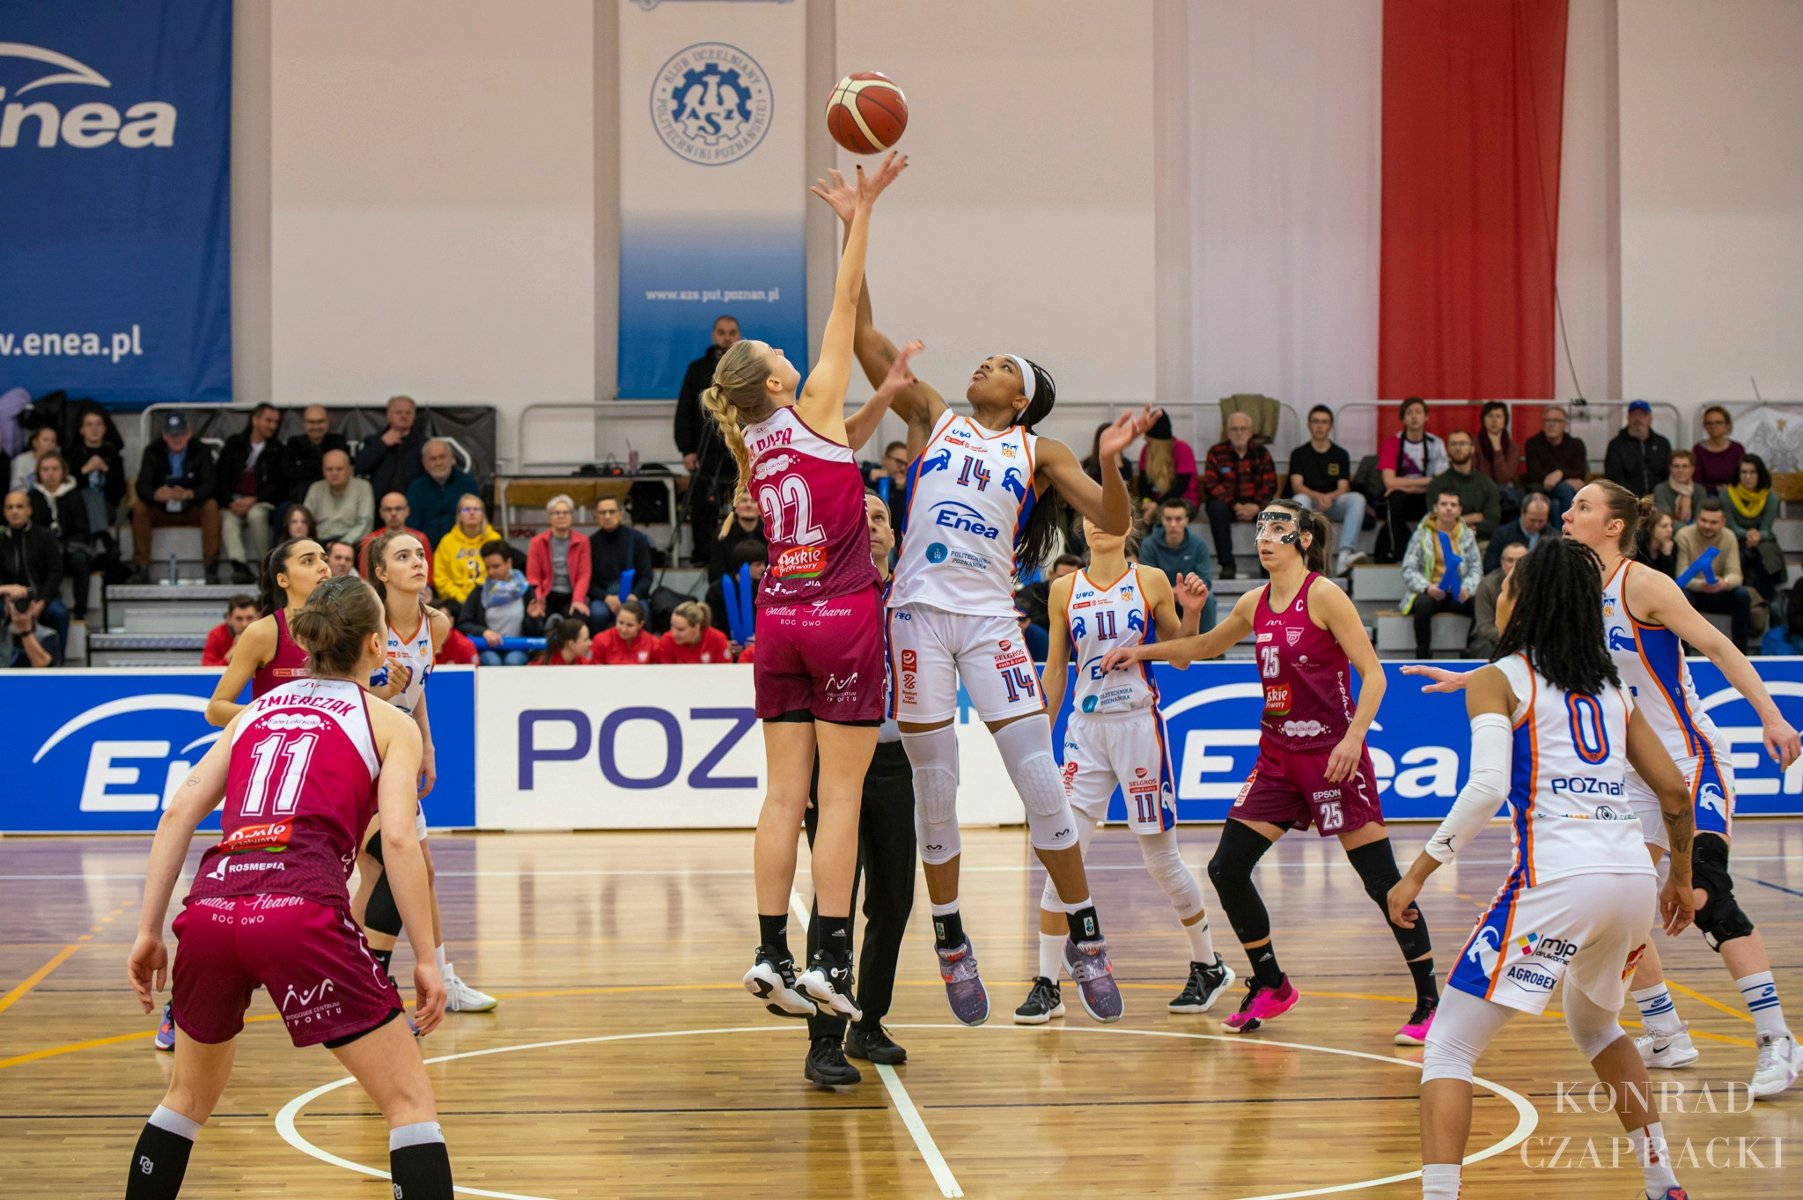 Zdjęcie przedstawia mecz koszykówki kobiet. Na środku kadru widać dwie zawodniczki walączce o piłkę. - grafika artykułu